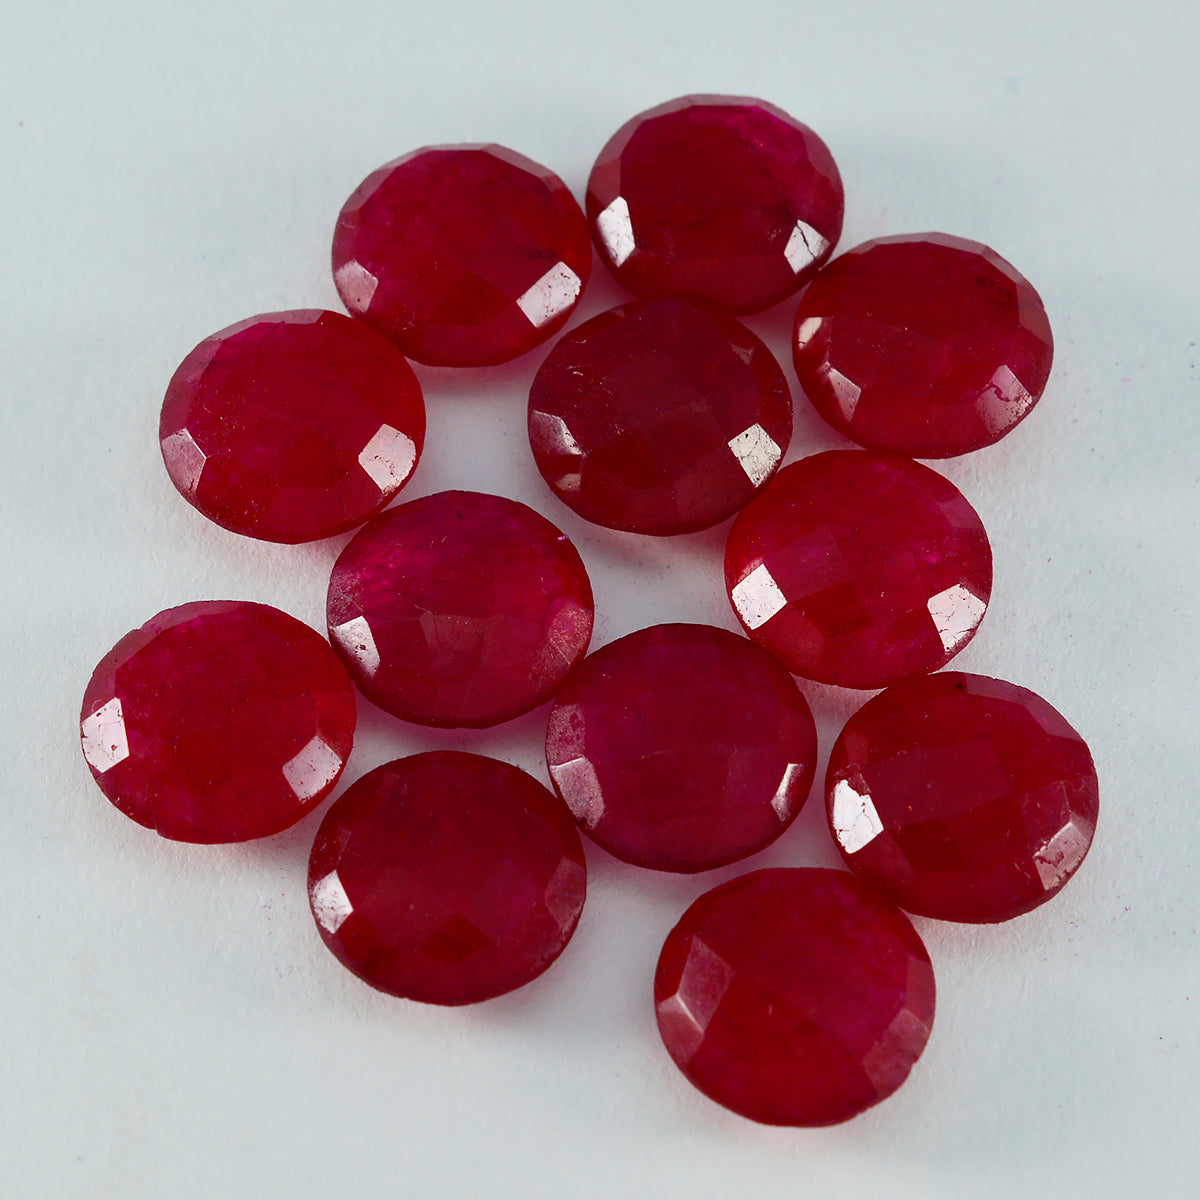 riyogems 1pc véritable jaspe rouge à facettes 11x11 mm forme ronde aa qualité pierre précieuse en vrac